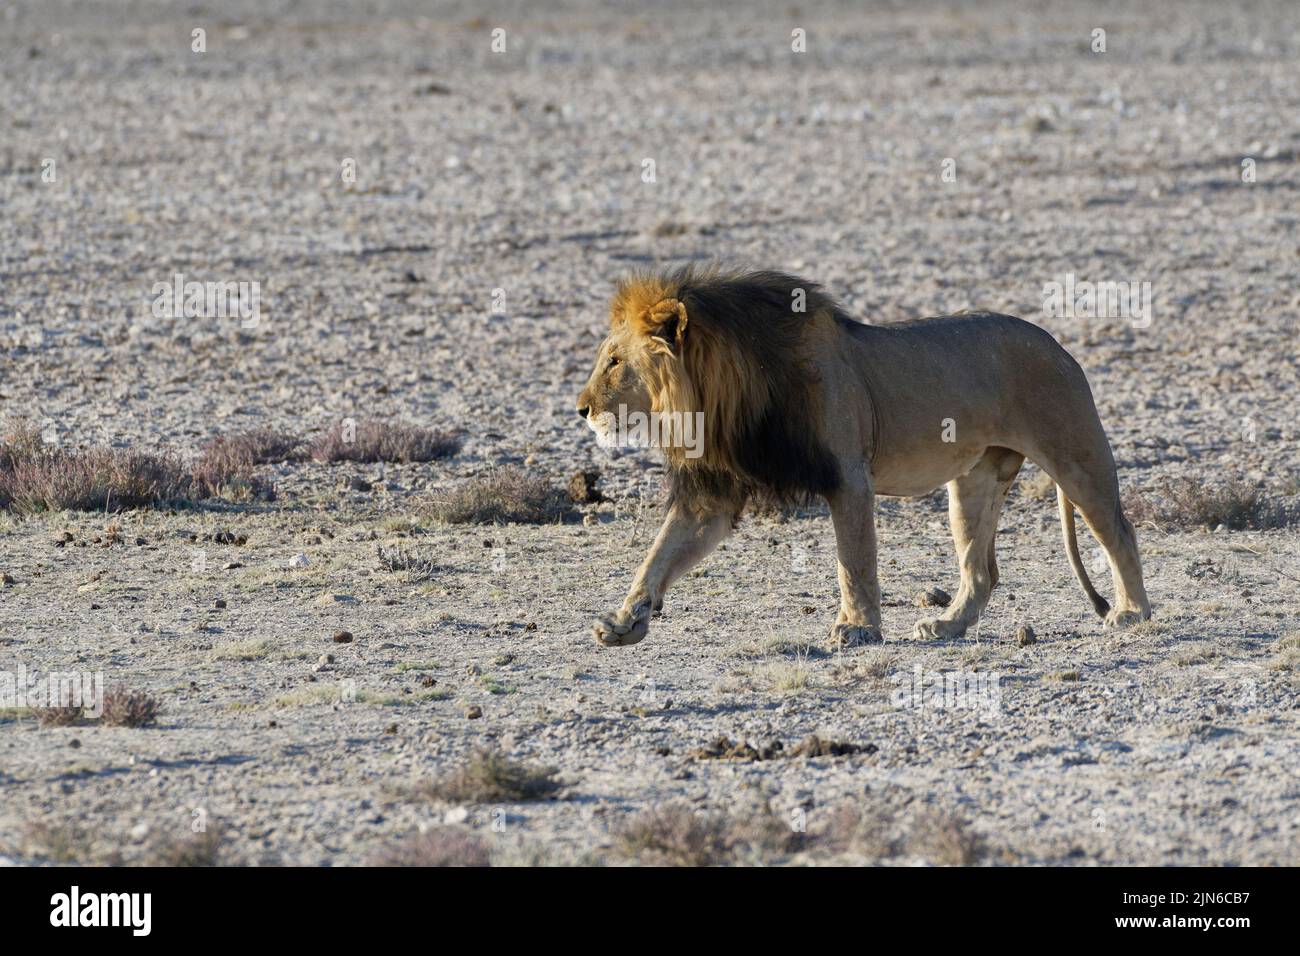 African lion (Panthera leo), adult male walking on arid grassland, Etosha National Park, Namibia, Africa Stock Photo